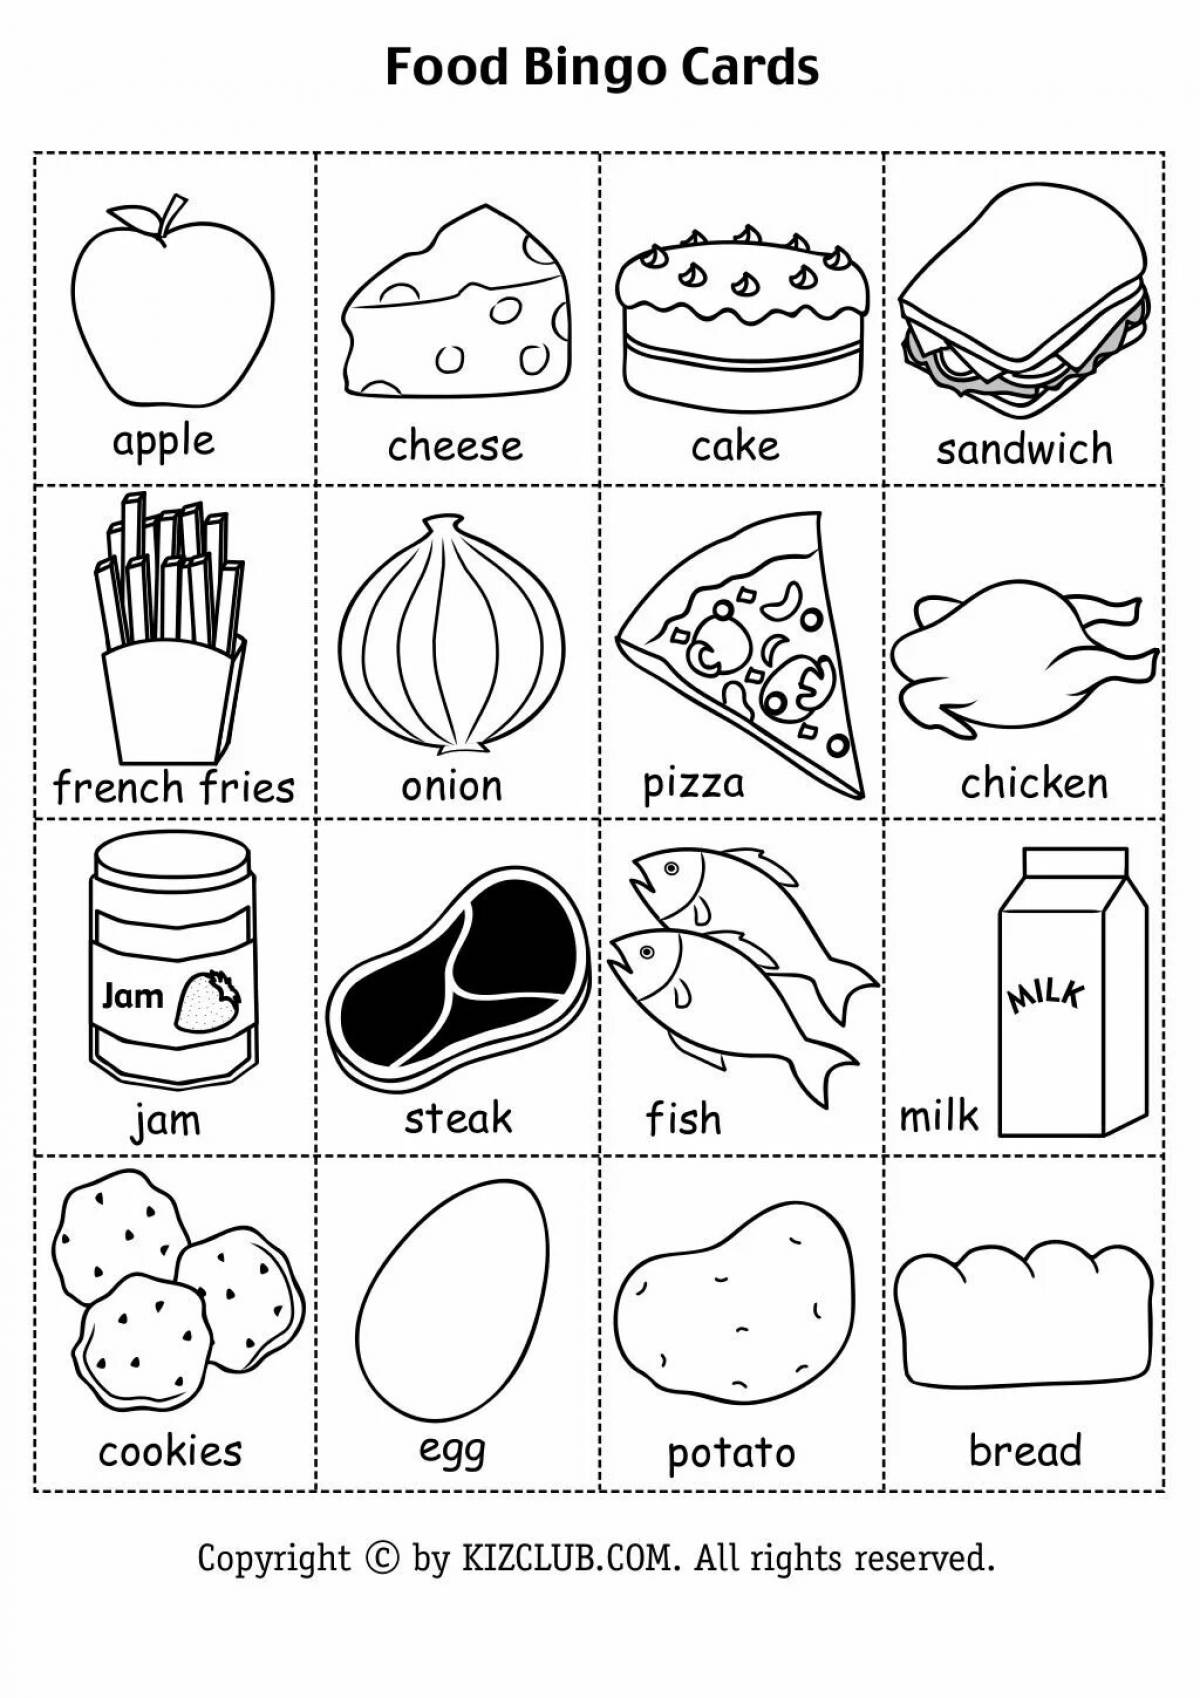 Еда на английском для 4 класса – Практические задания – Развитие ребенка